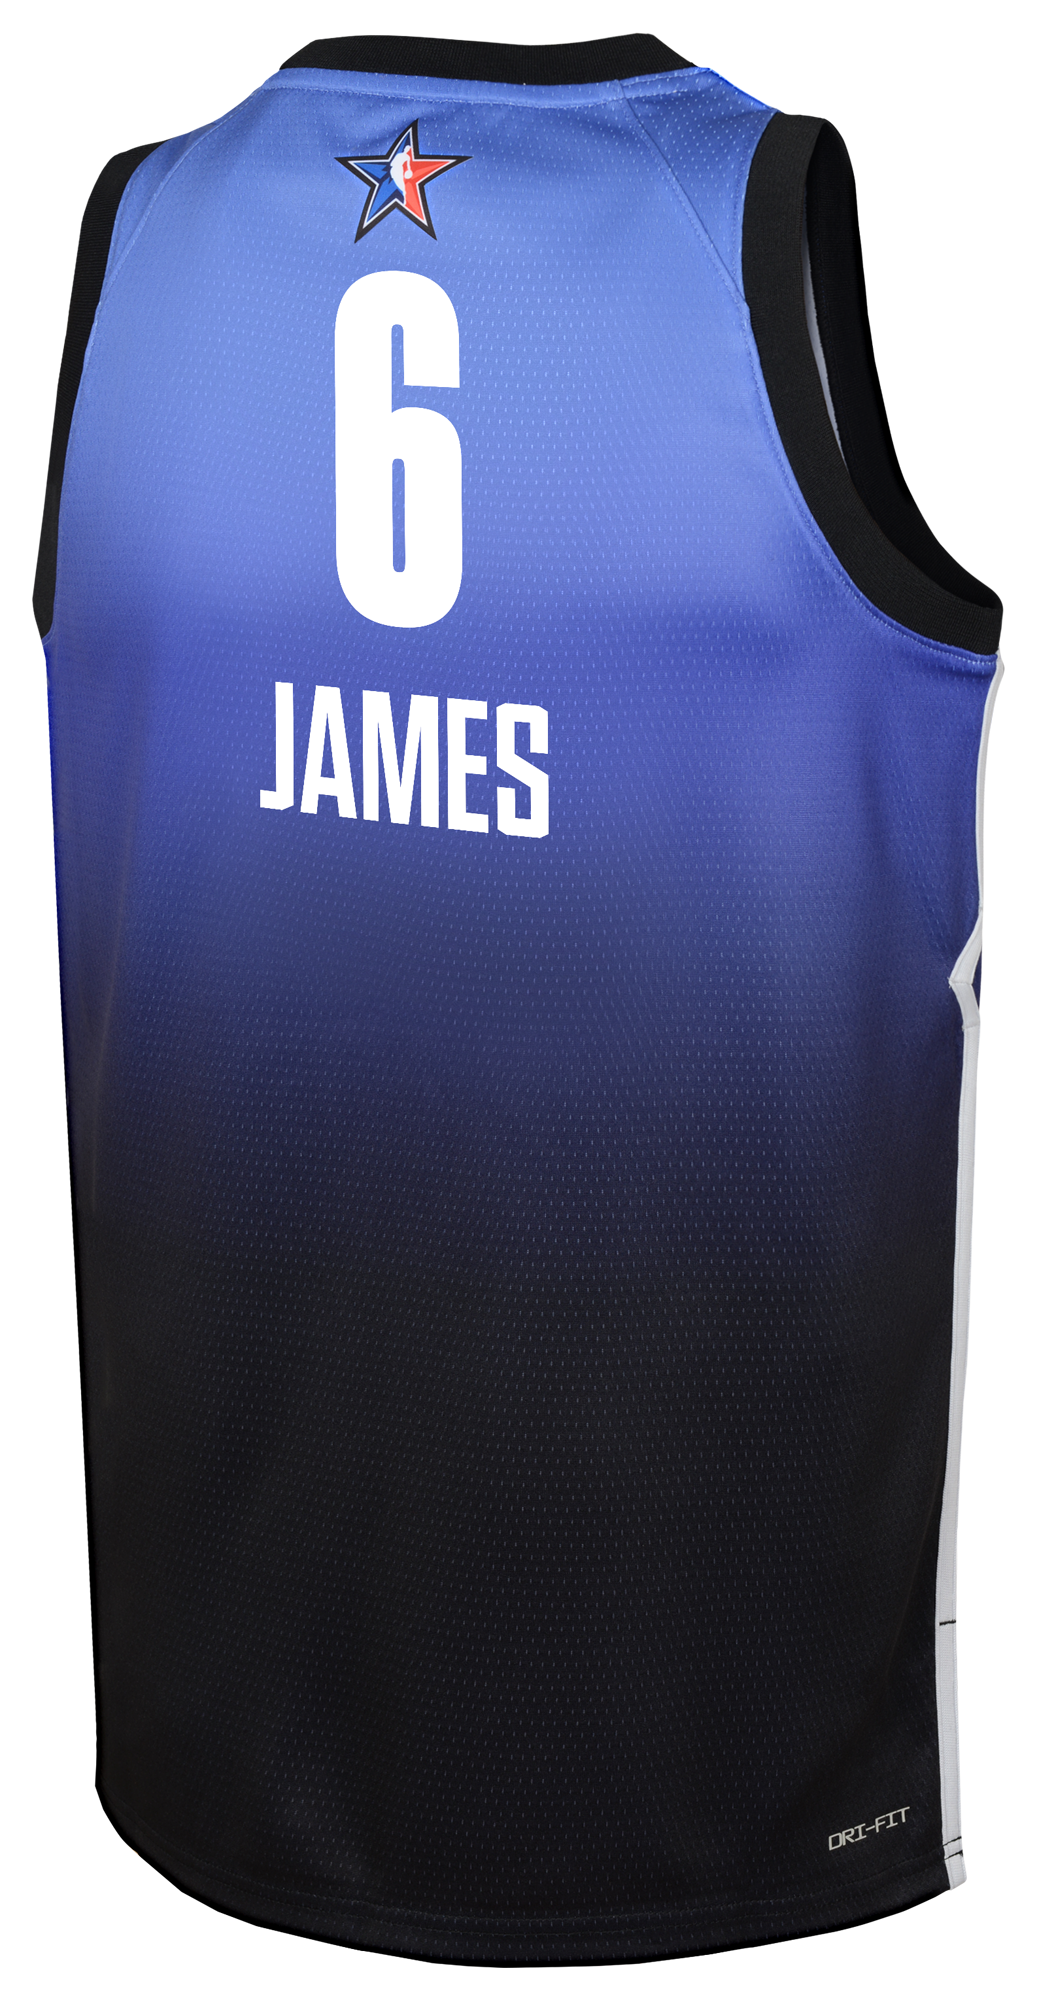 Nike Basketball jersey DRI-FIT SWINGMAN in dark blue/ light blue